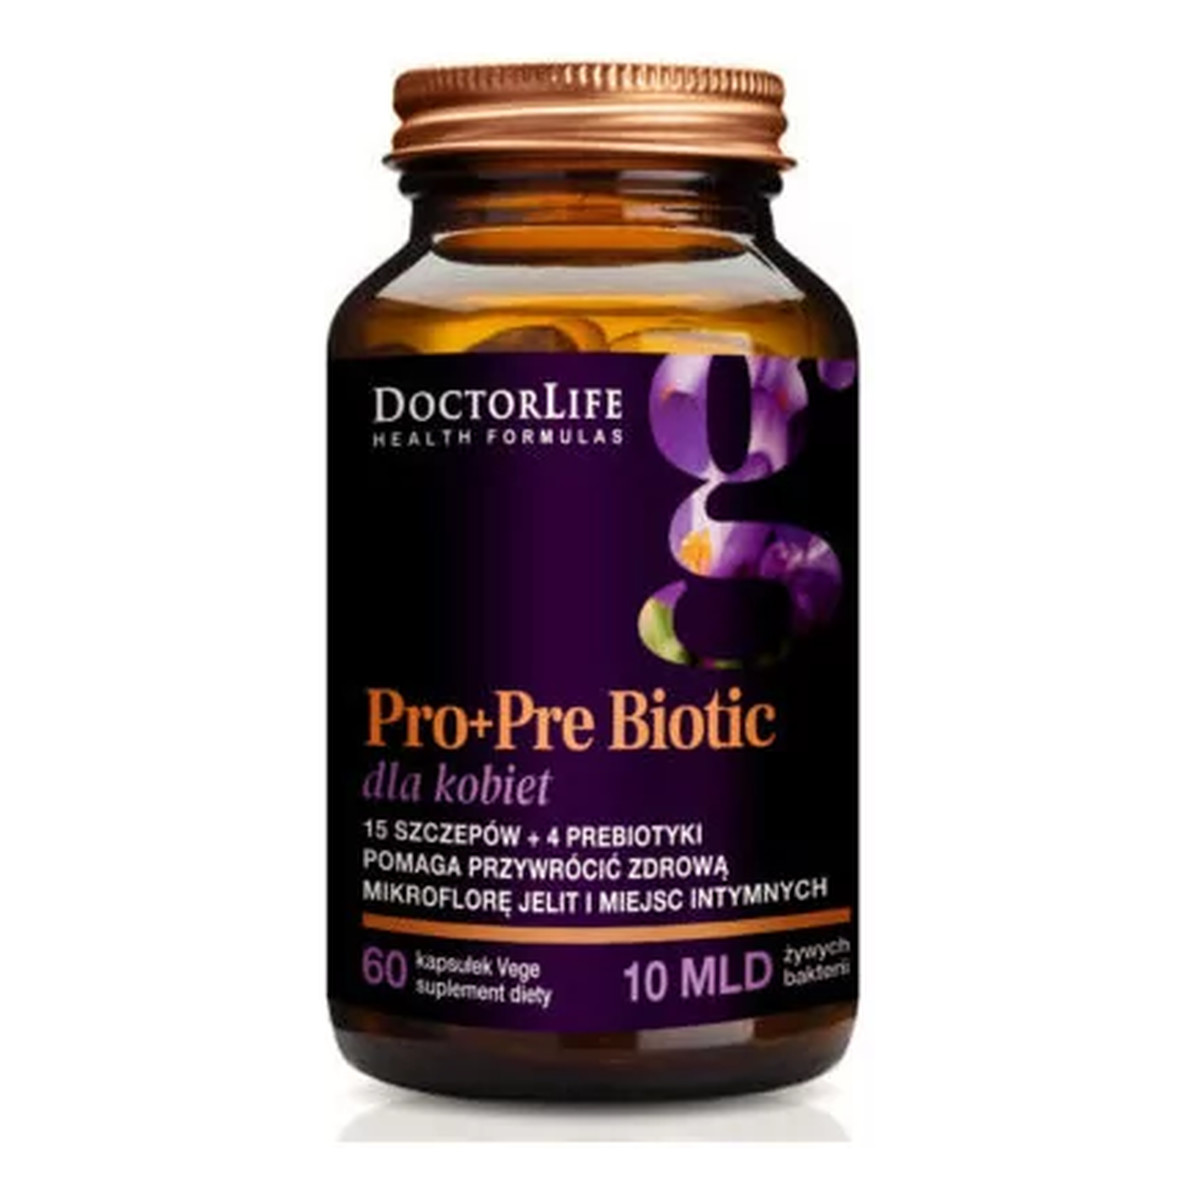 Doctor Life Probioflora women probiotyki dla kobiet 14 szczepów & 4 prebiotyki suplement diety 60 kapsułek